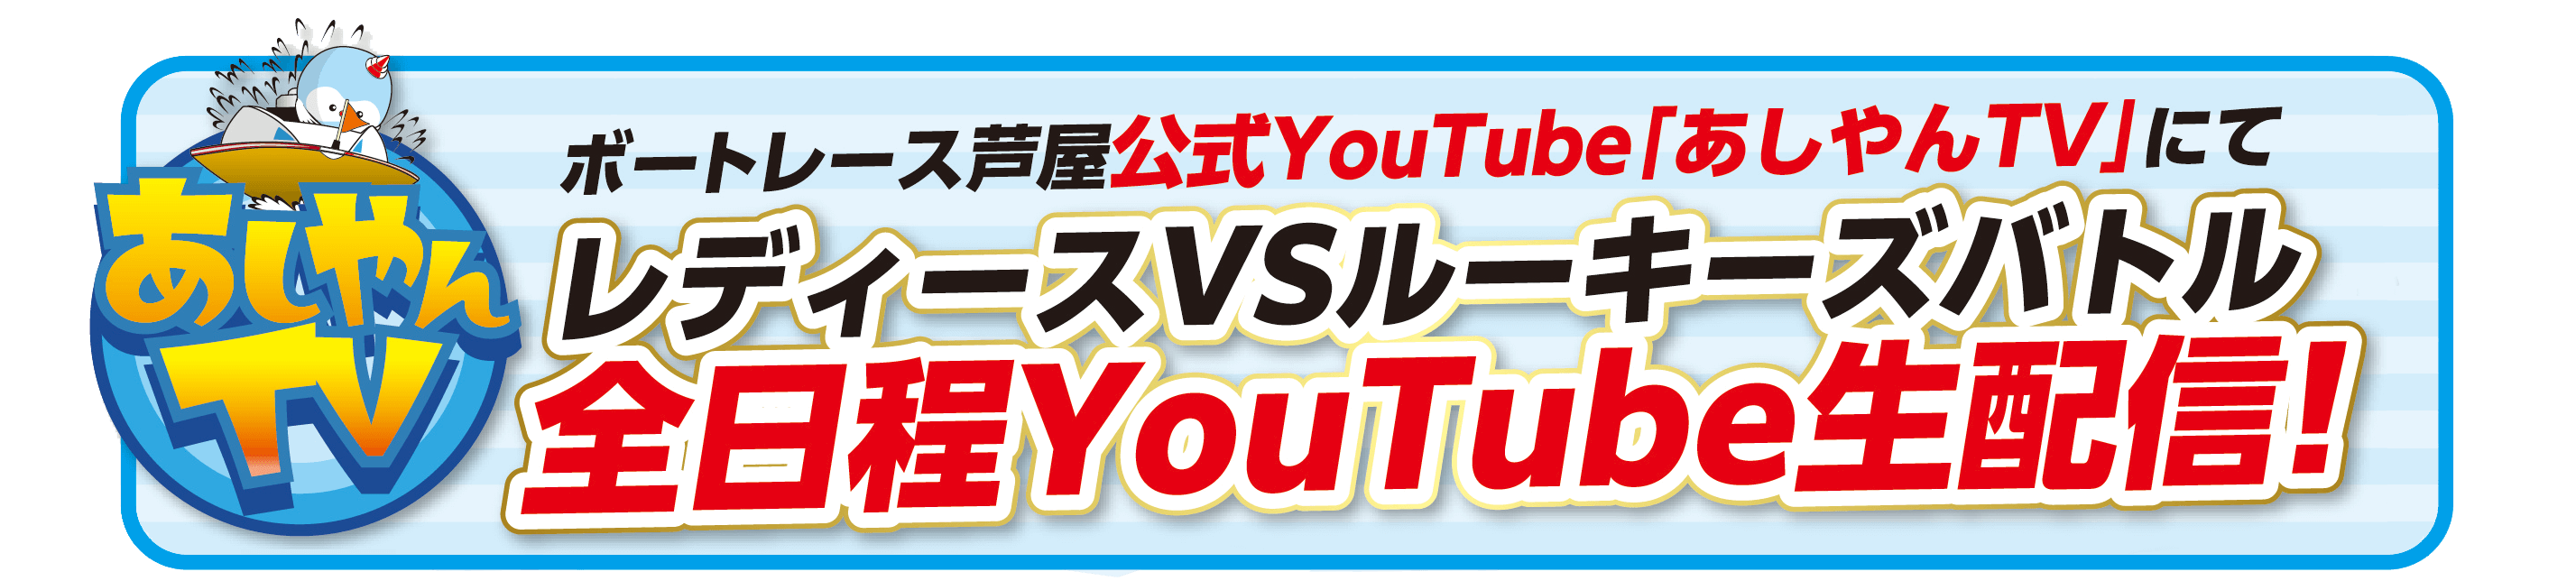 ボートレース芦屋公式YouTube「あしやんTV」にてレディースVSルーキーズバトル全日程YouTube生配信！